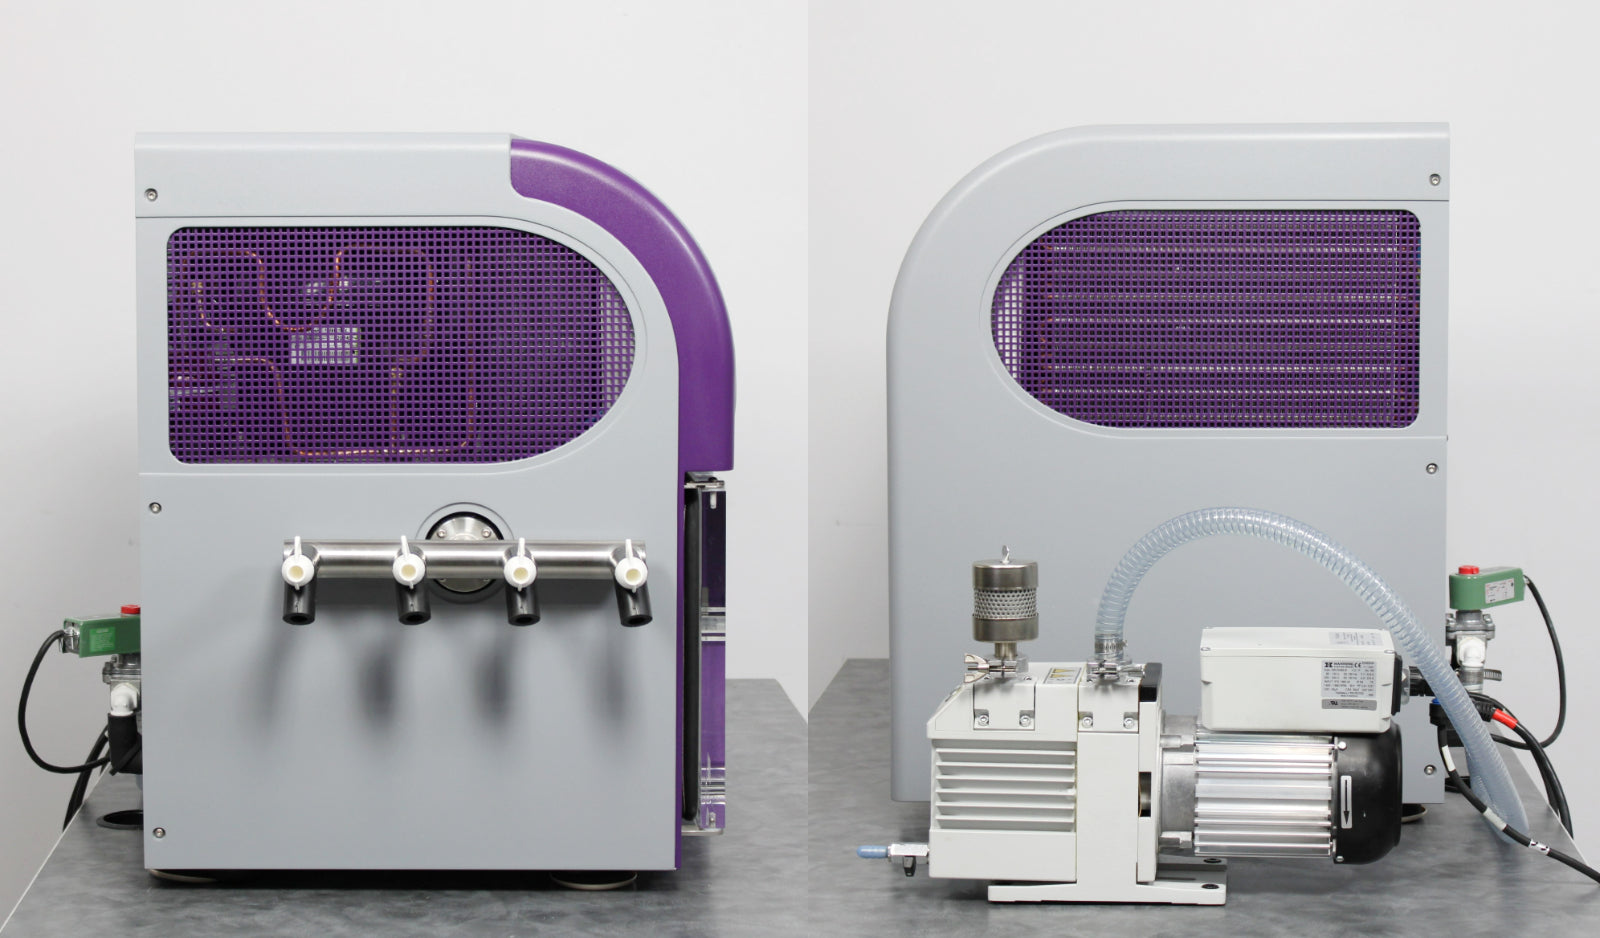 SP Scientific Announces the AdVantage Pro - a New Laboratory Freeze Dryer  that Combines Development and Pilot Scale Capabilities in a Convenient  Bench Top Unit.